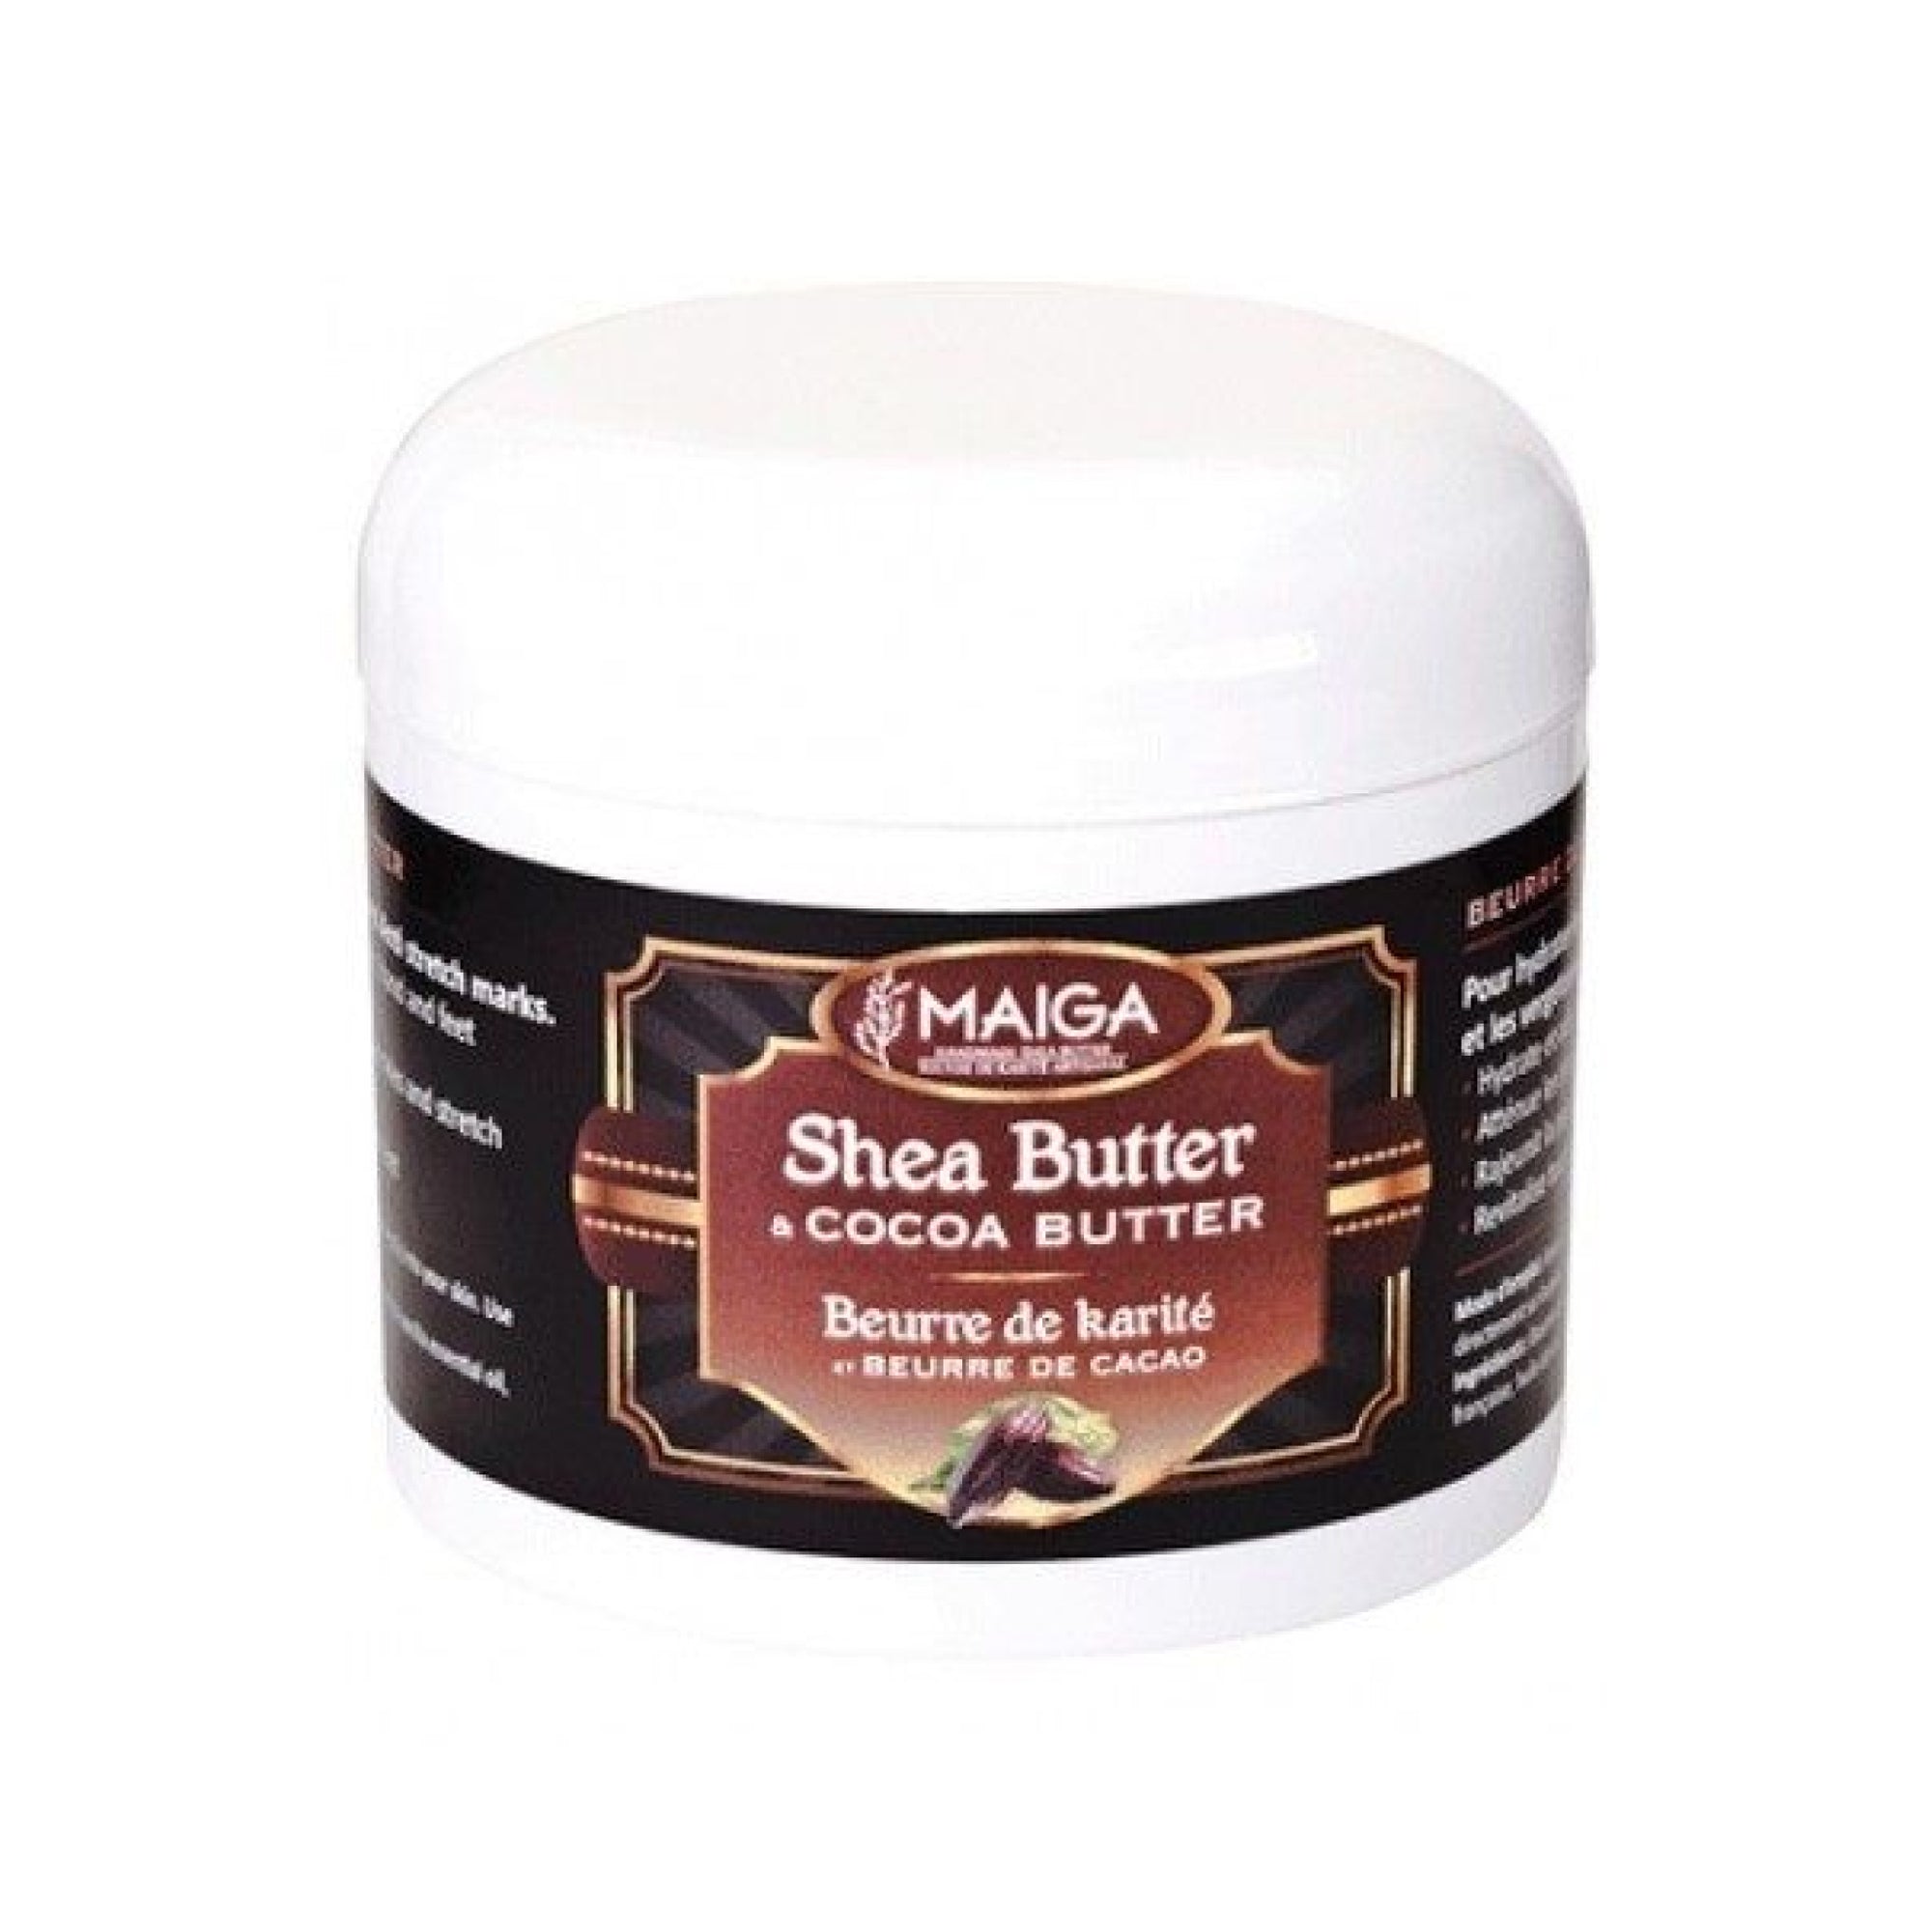 Maiga Shea Butter & Cocoa Butter 118ml